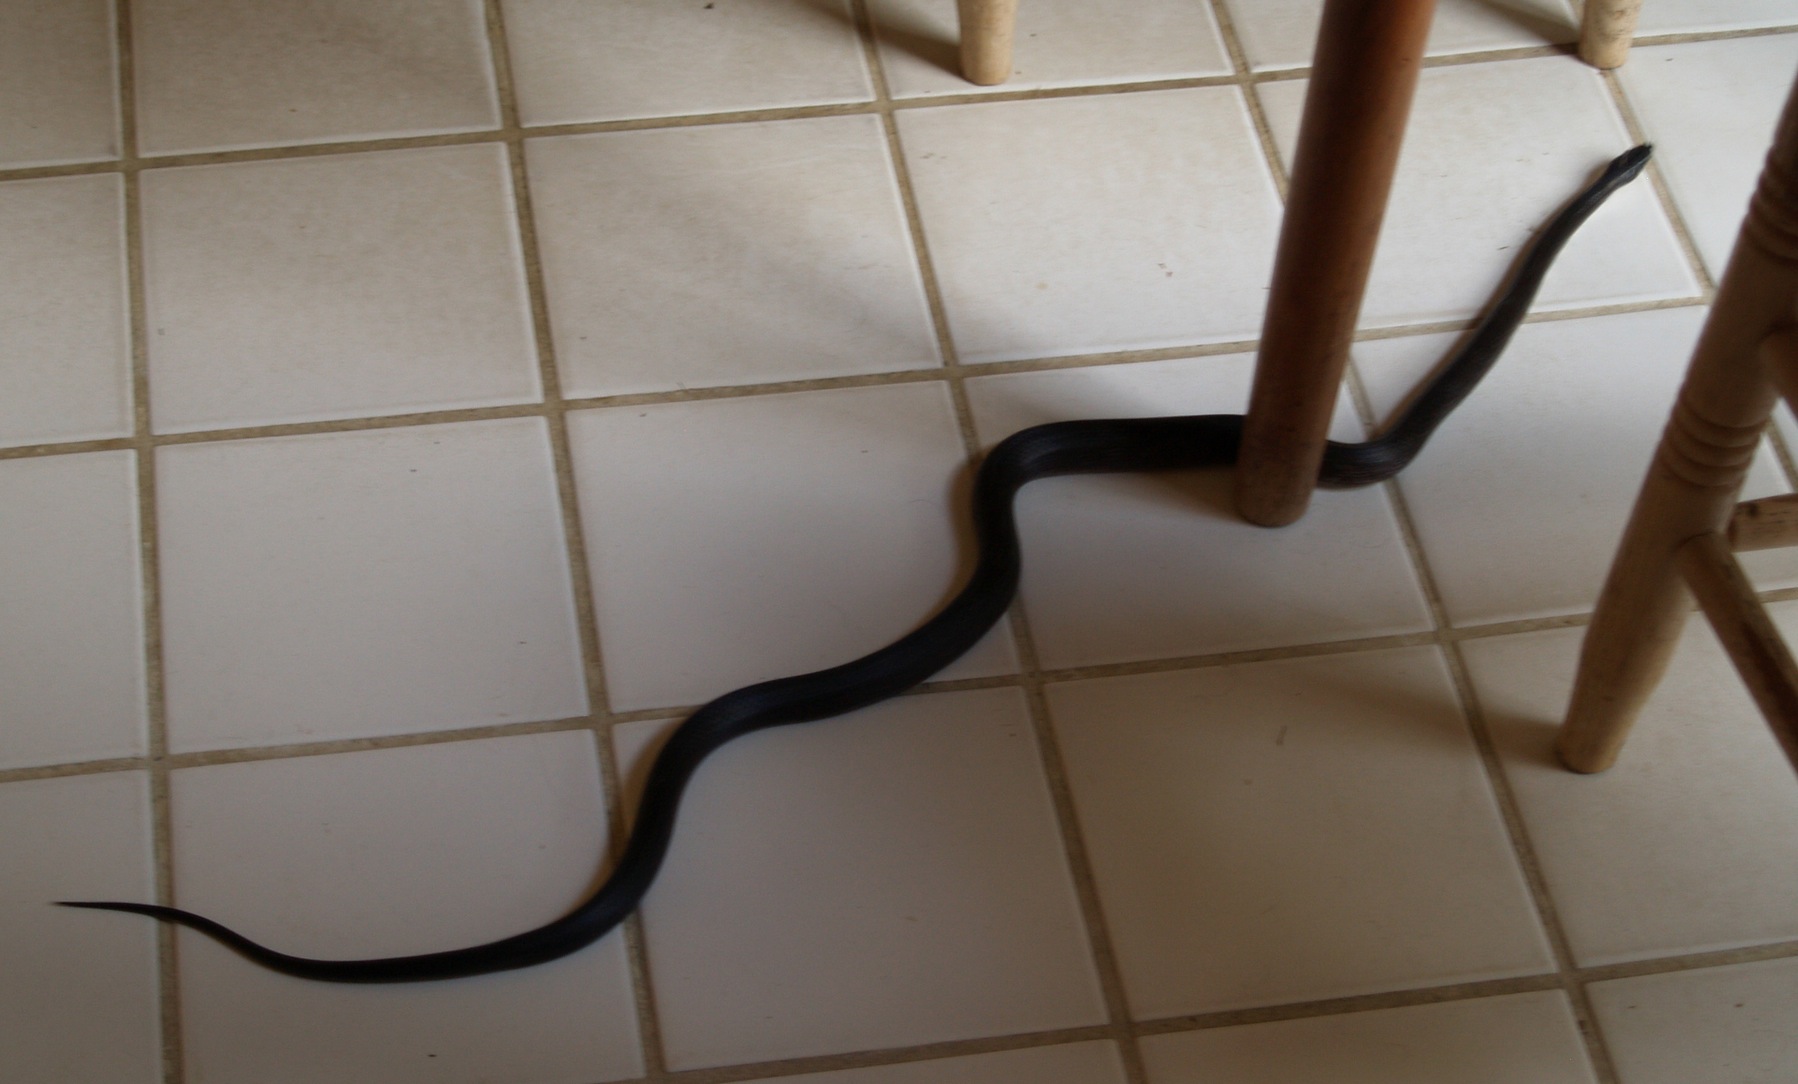 Snake on floor photo